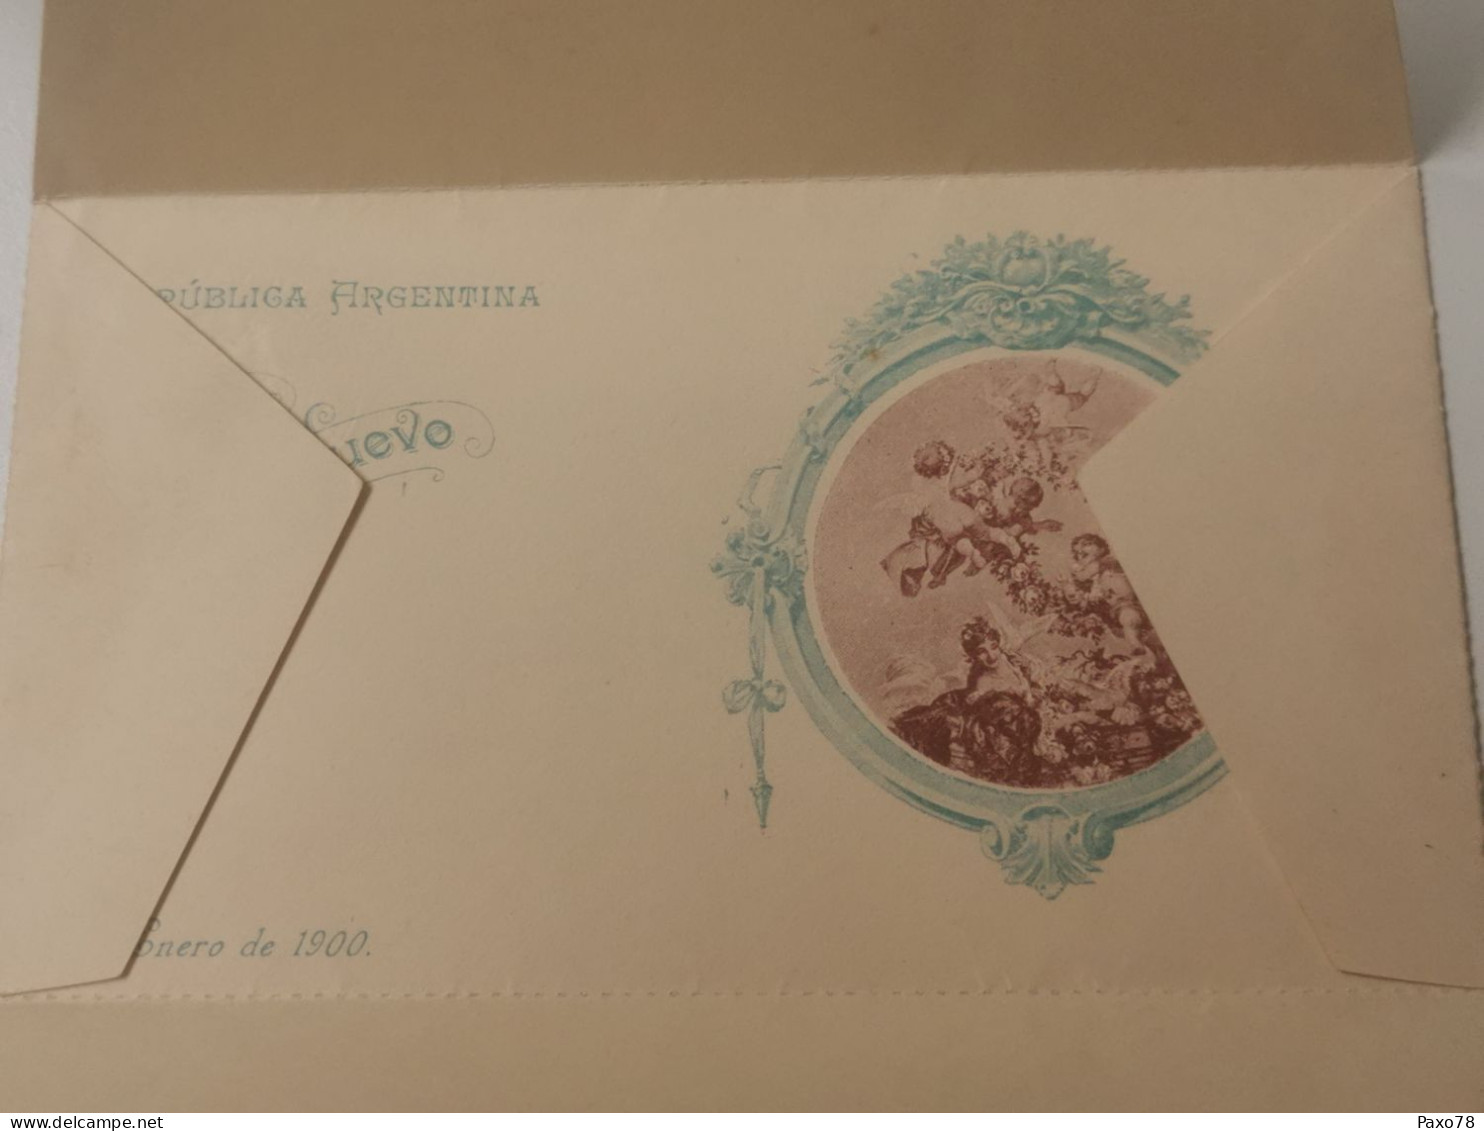 Tarjeta Postal, 5 Centavos Vierge - Ganzsachen